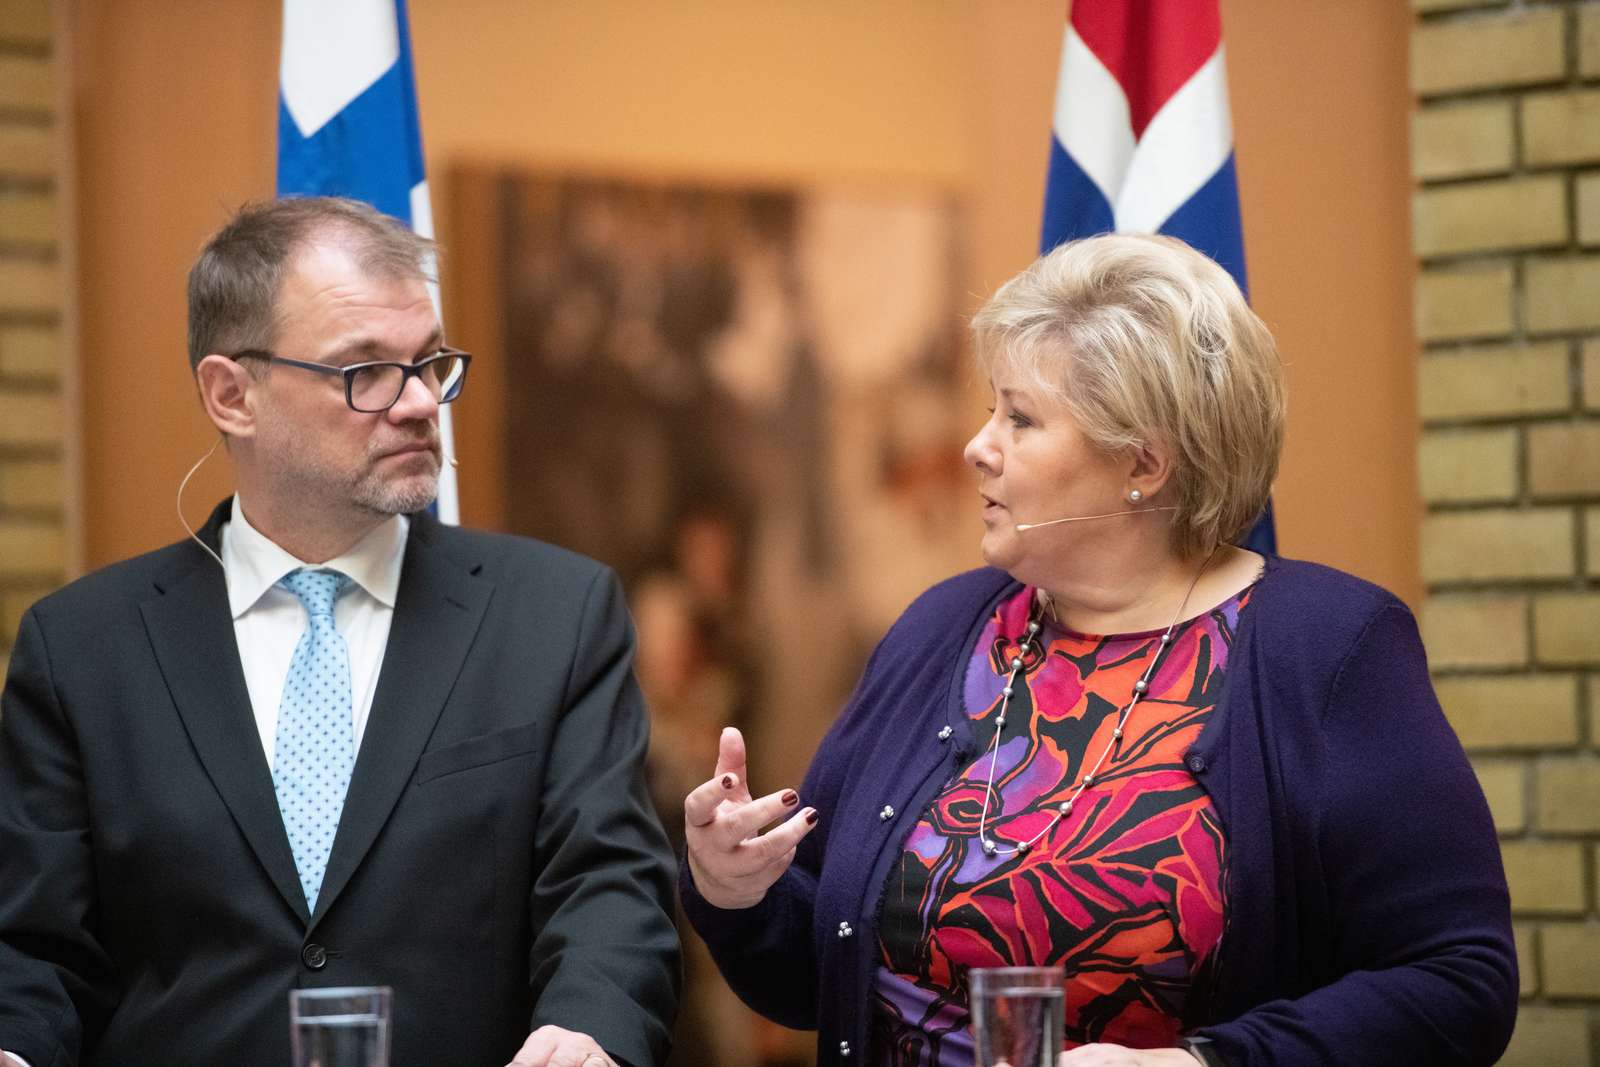 Juha Sipilä and Erna Solberg